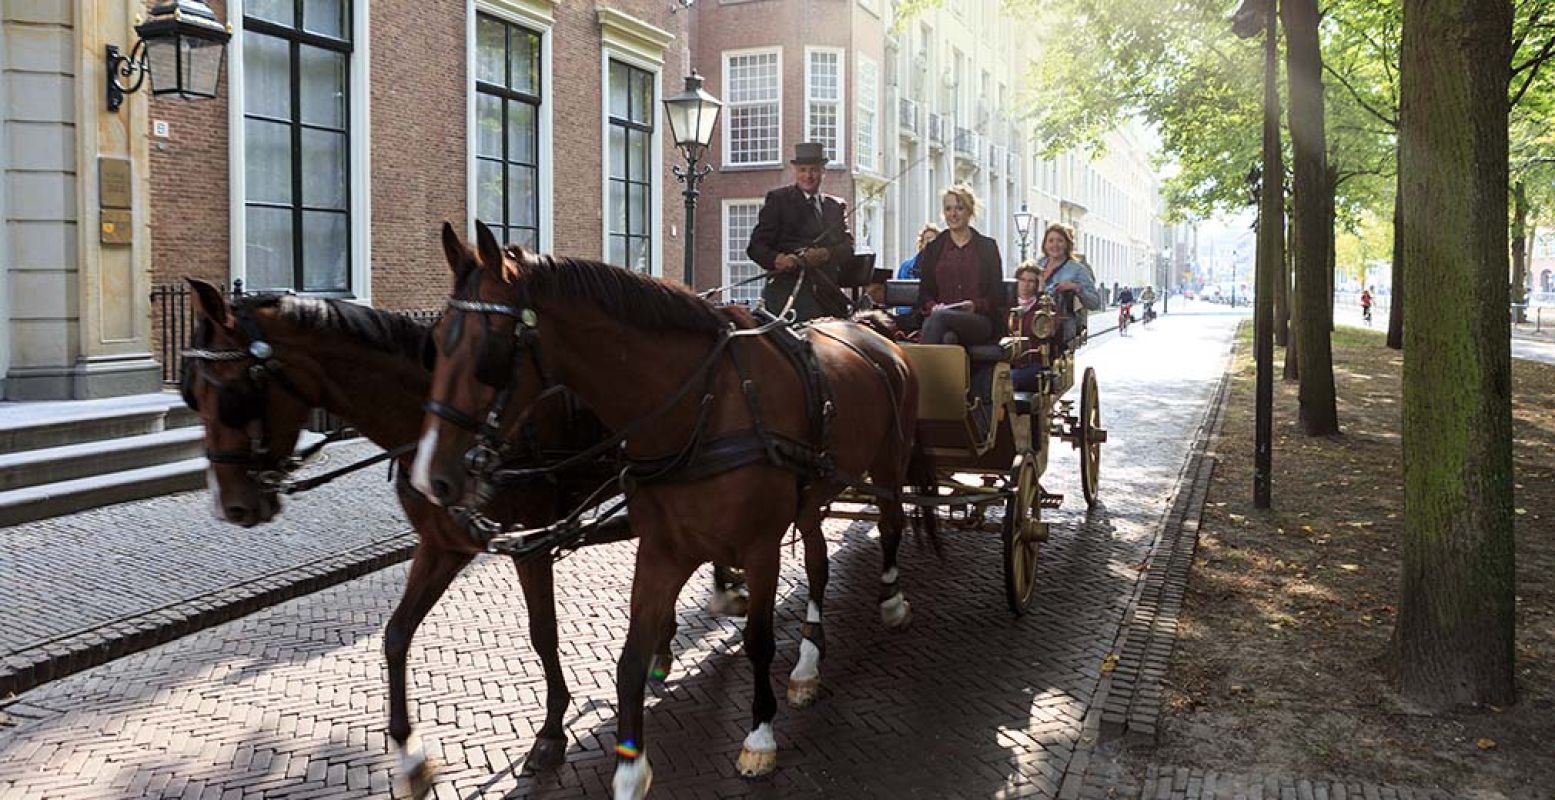 Tot en met 15 september kun je in het Gouden Koetsje door Den Haag rijden. Foto: The Hague Marketing Bureau © Arjan de Jager.